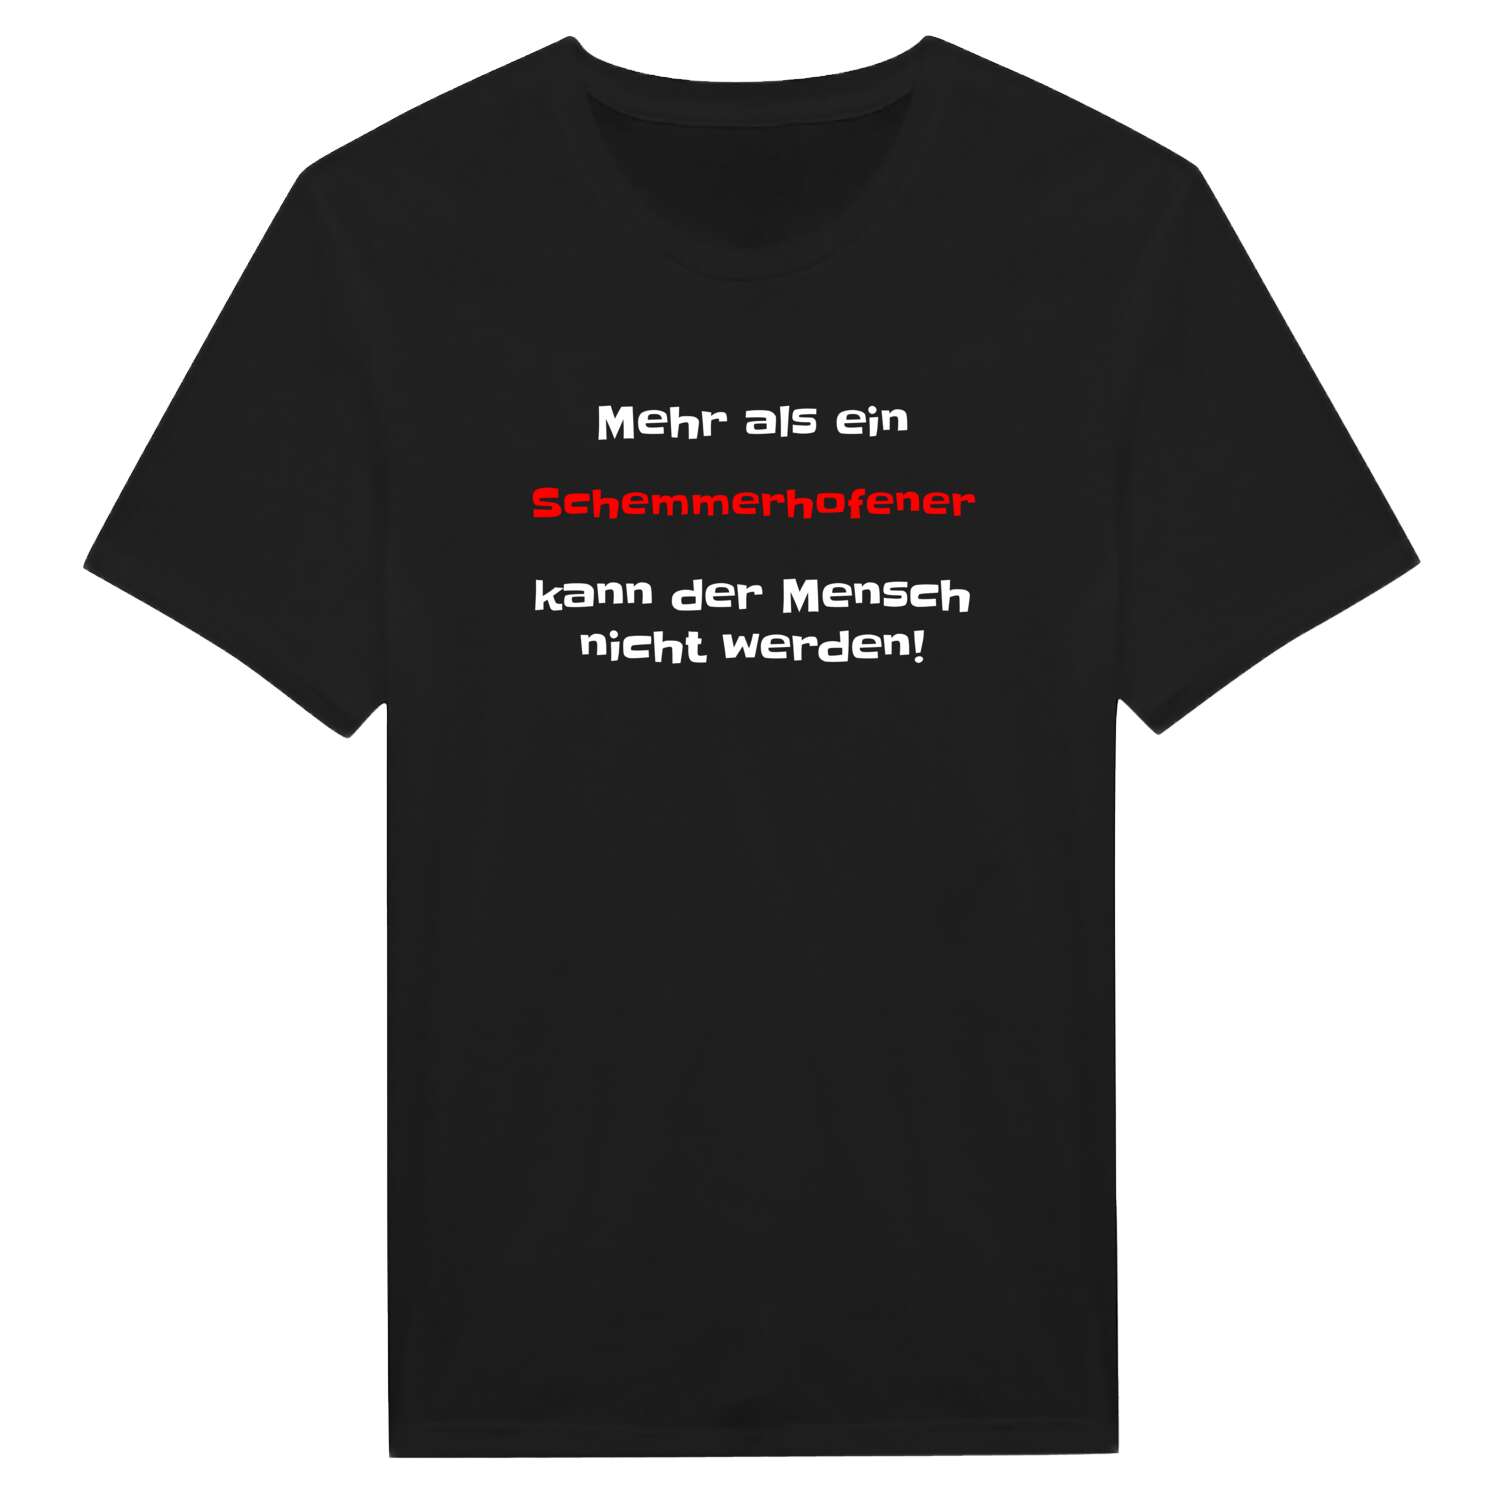 Schemmerhofen T-Shirt »Mehr als ein«